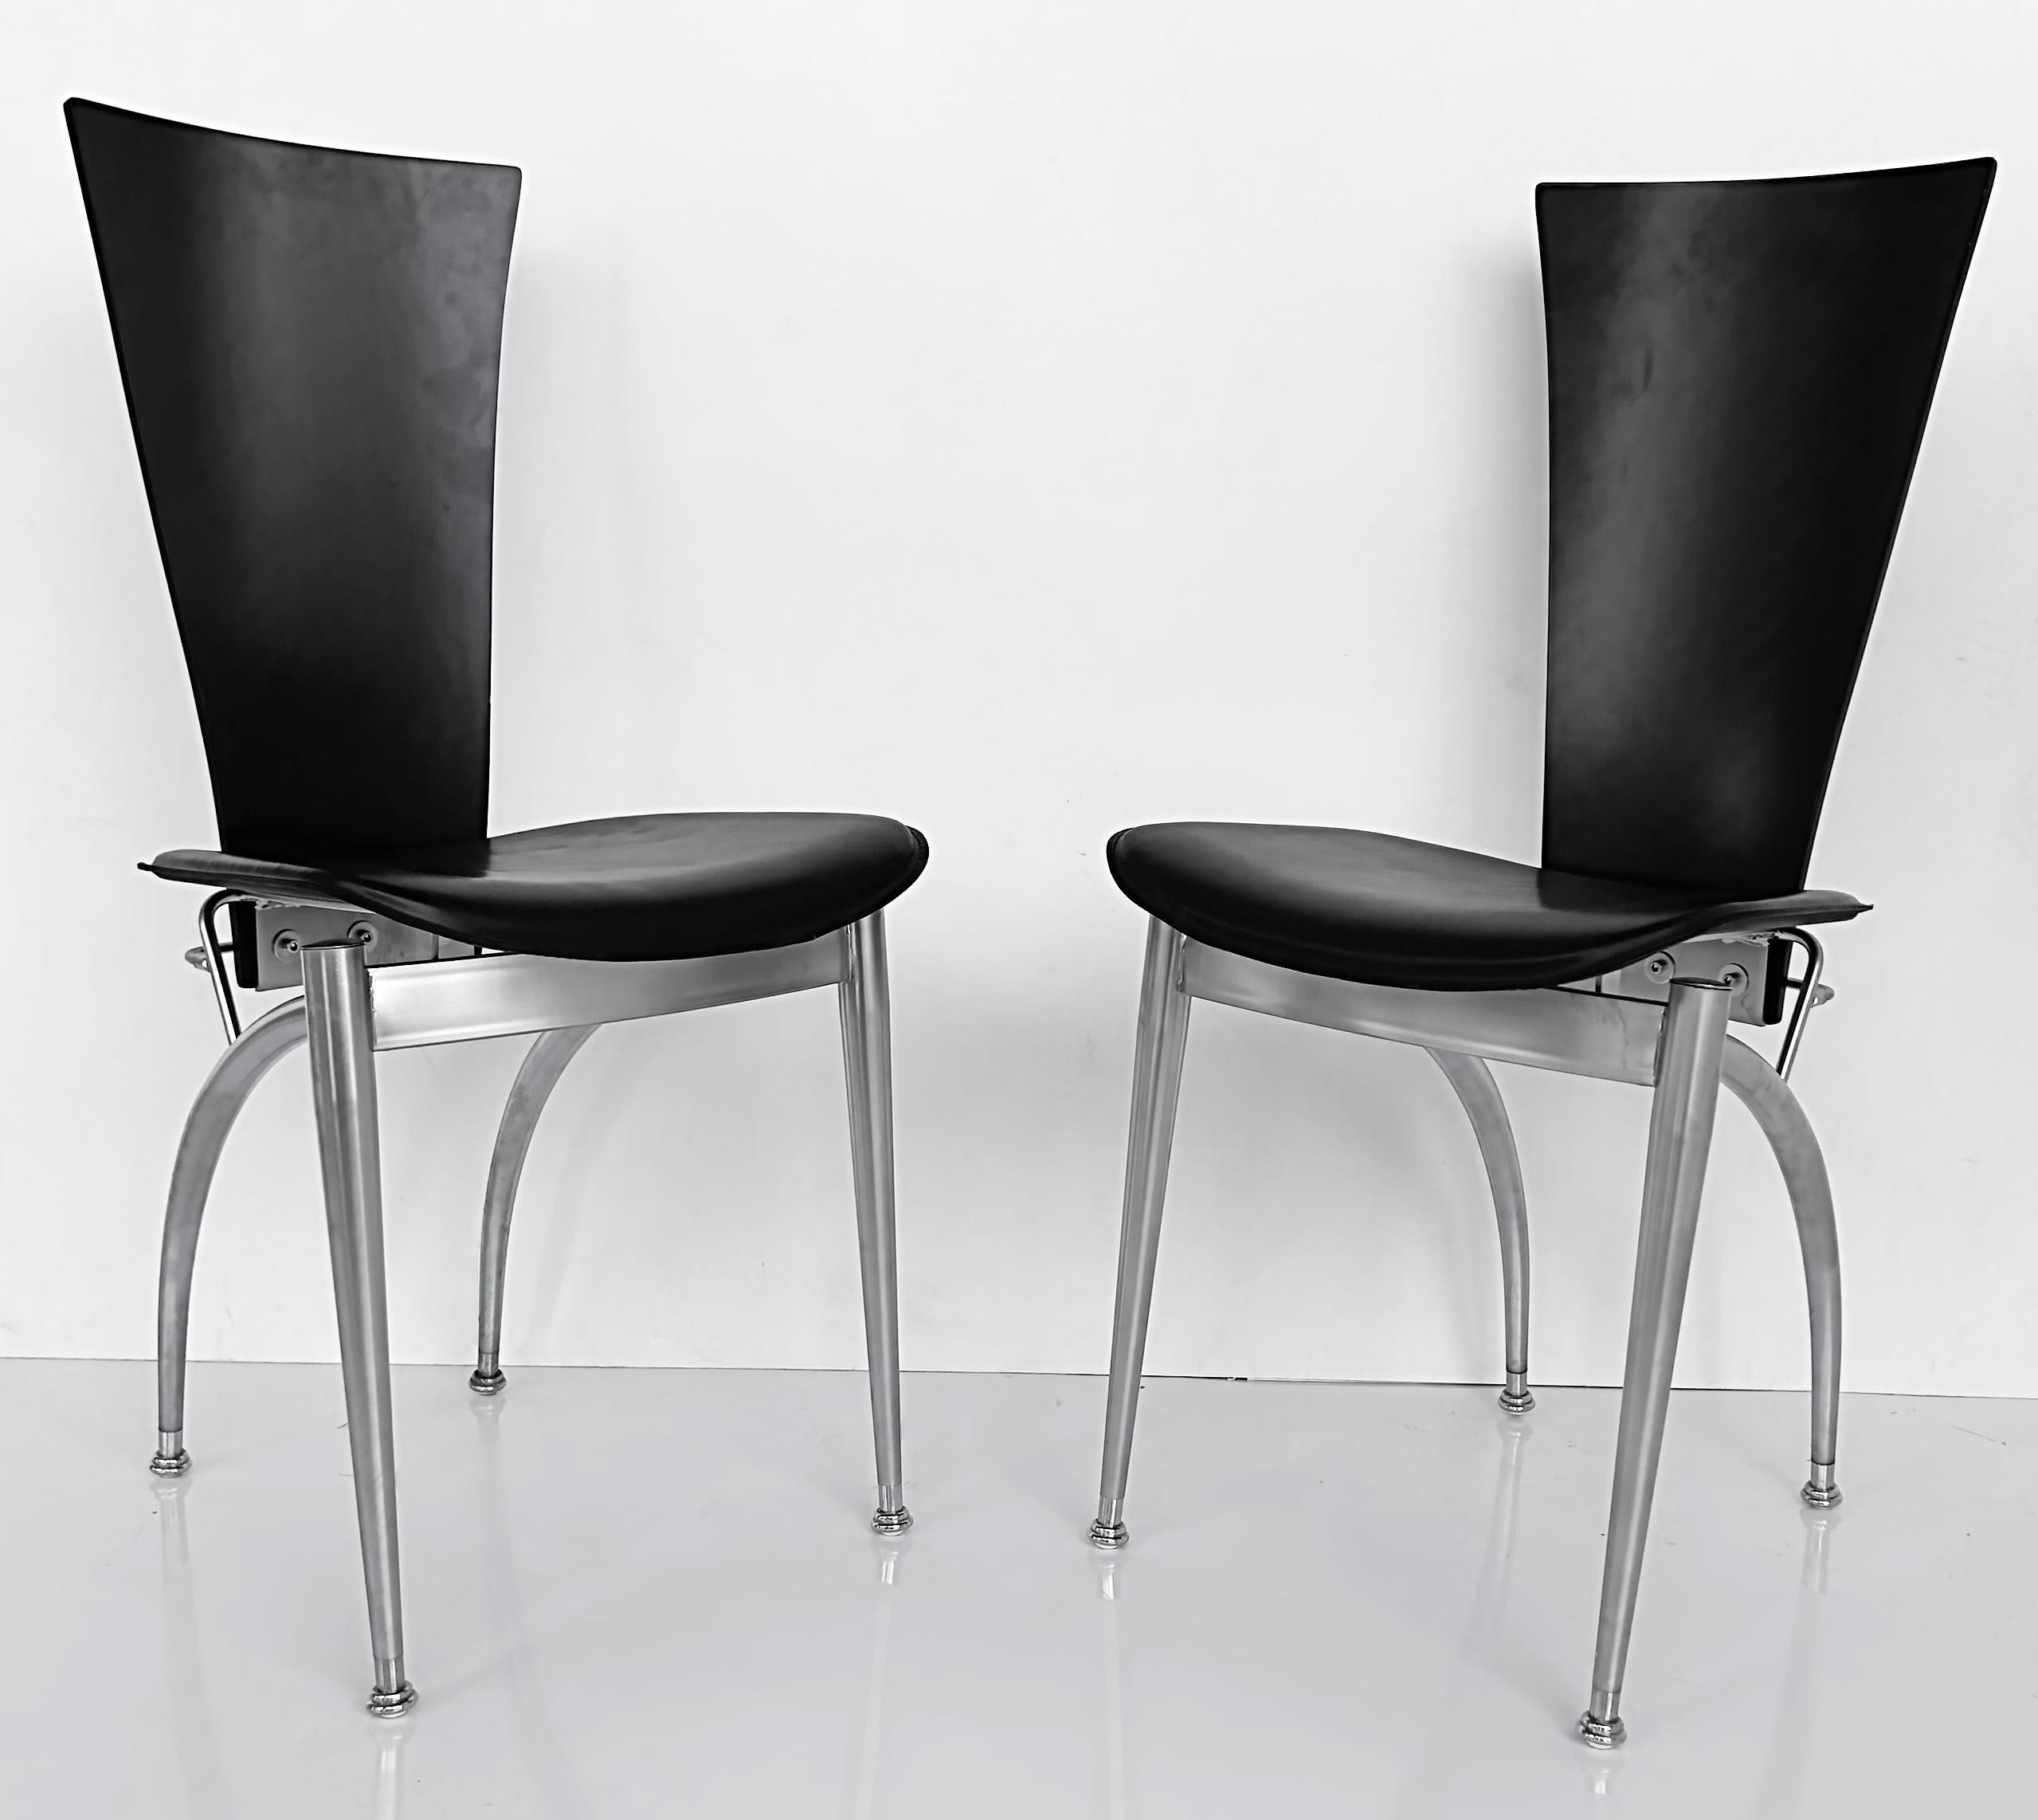 Chaises de salle à manger italiennes post-modernes en bois, cuir et acier inoxydable, lot de 4

Nous proposons à la vente un ensemble de quatre chaises de salle à manger post-modernes italiennes noires avec des châssis en acier inoxydable. Le